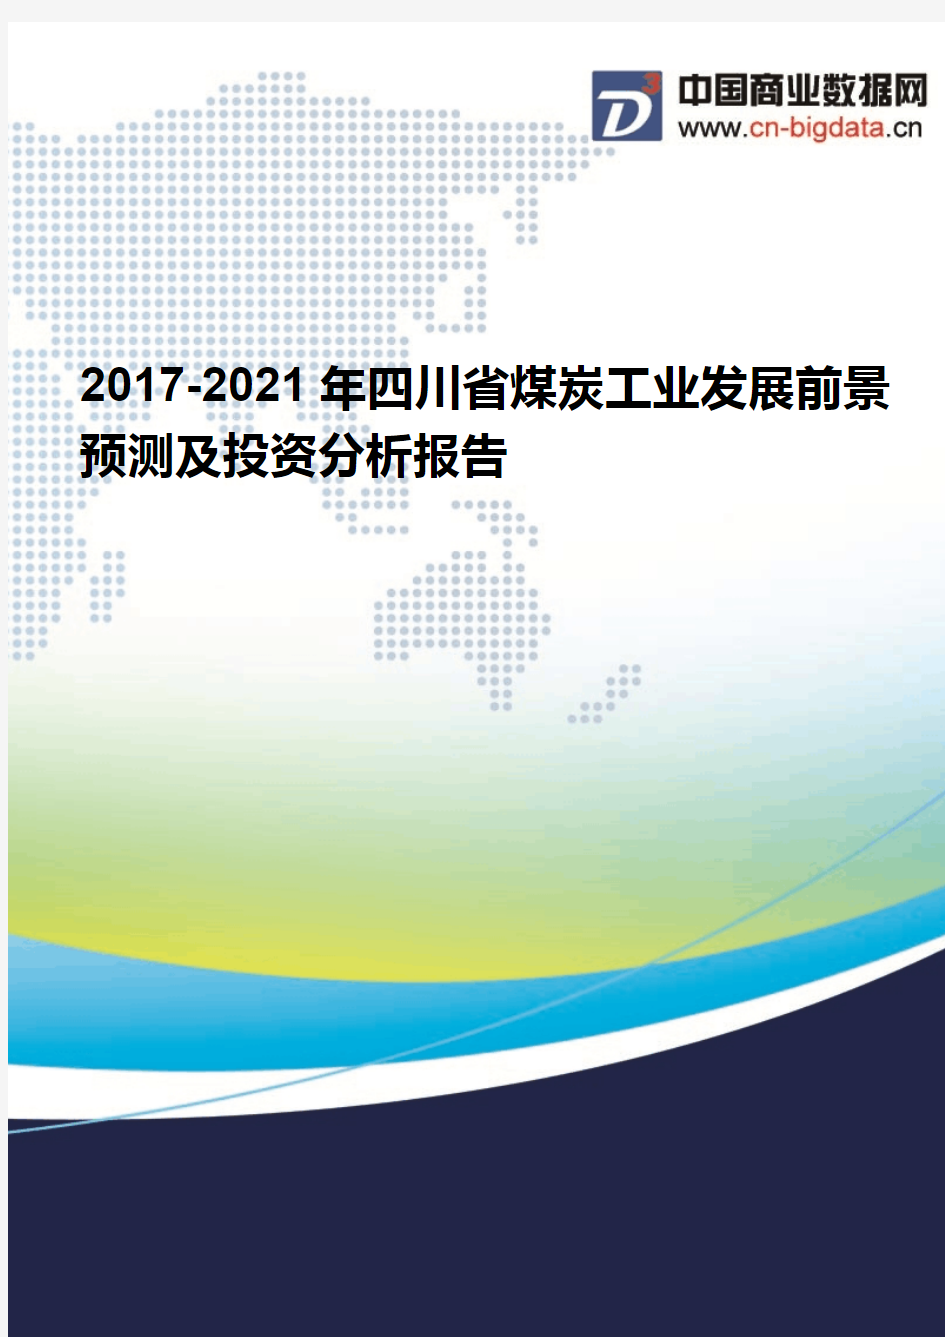 (2017版目录)2017-2021年四川省煤炭工业发展前景预测及投资分析报告